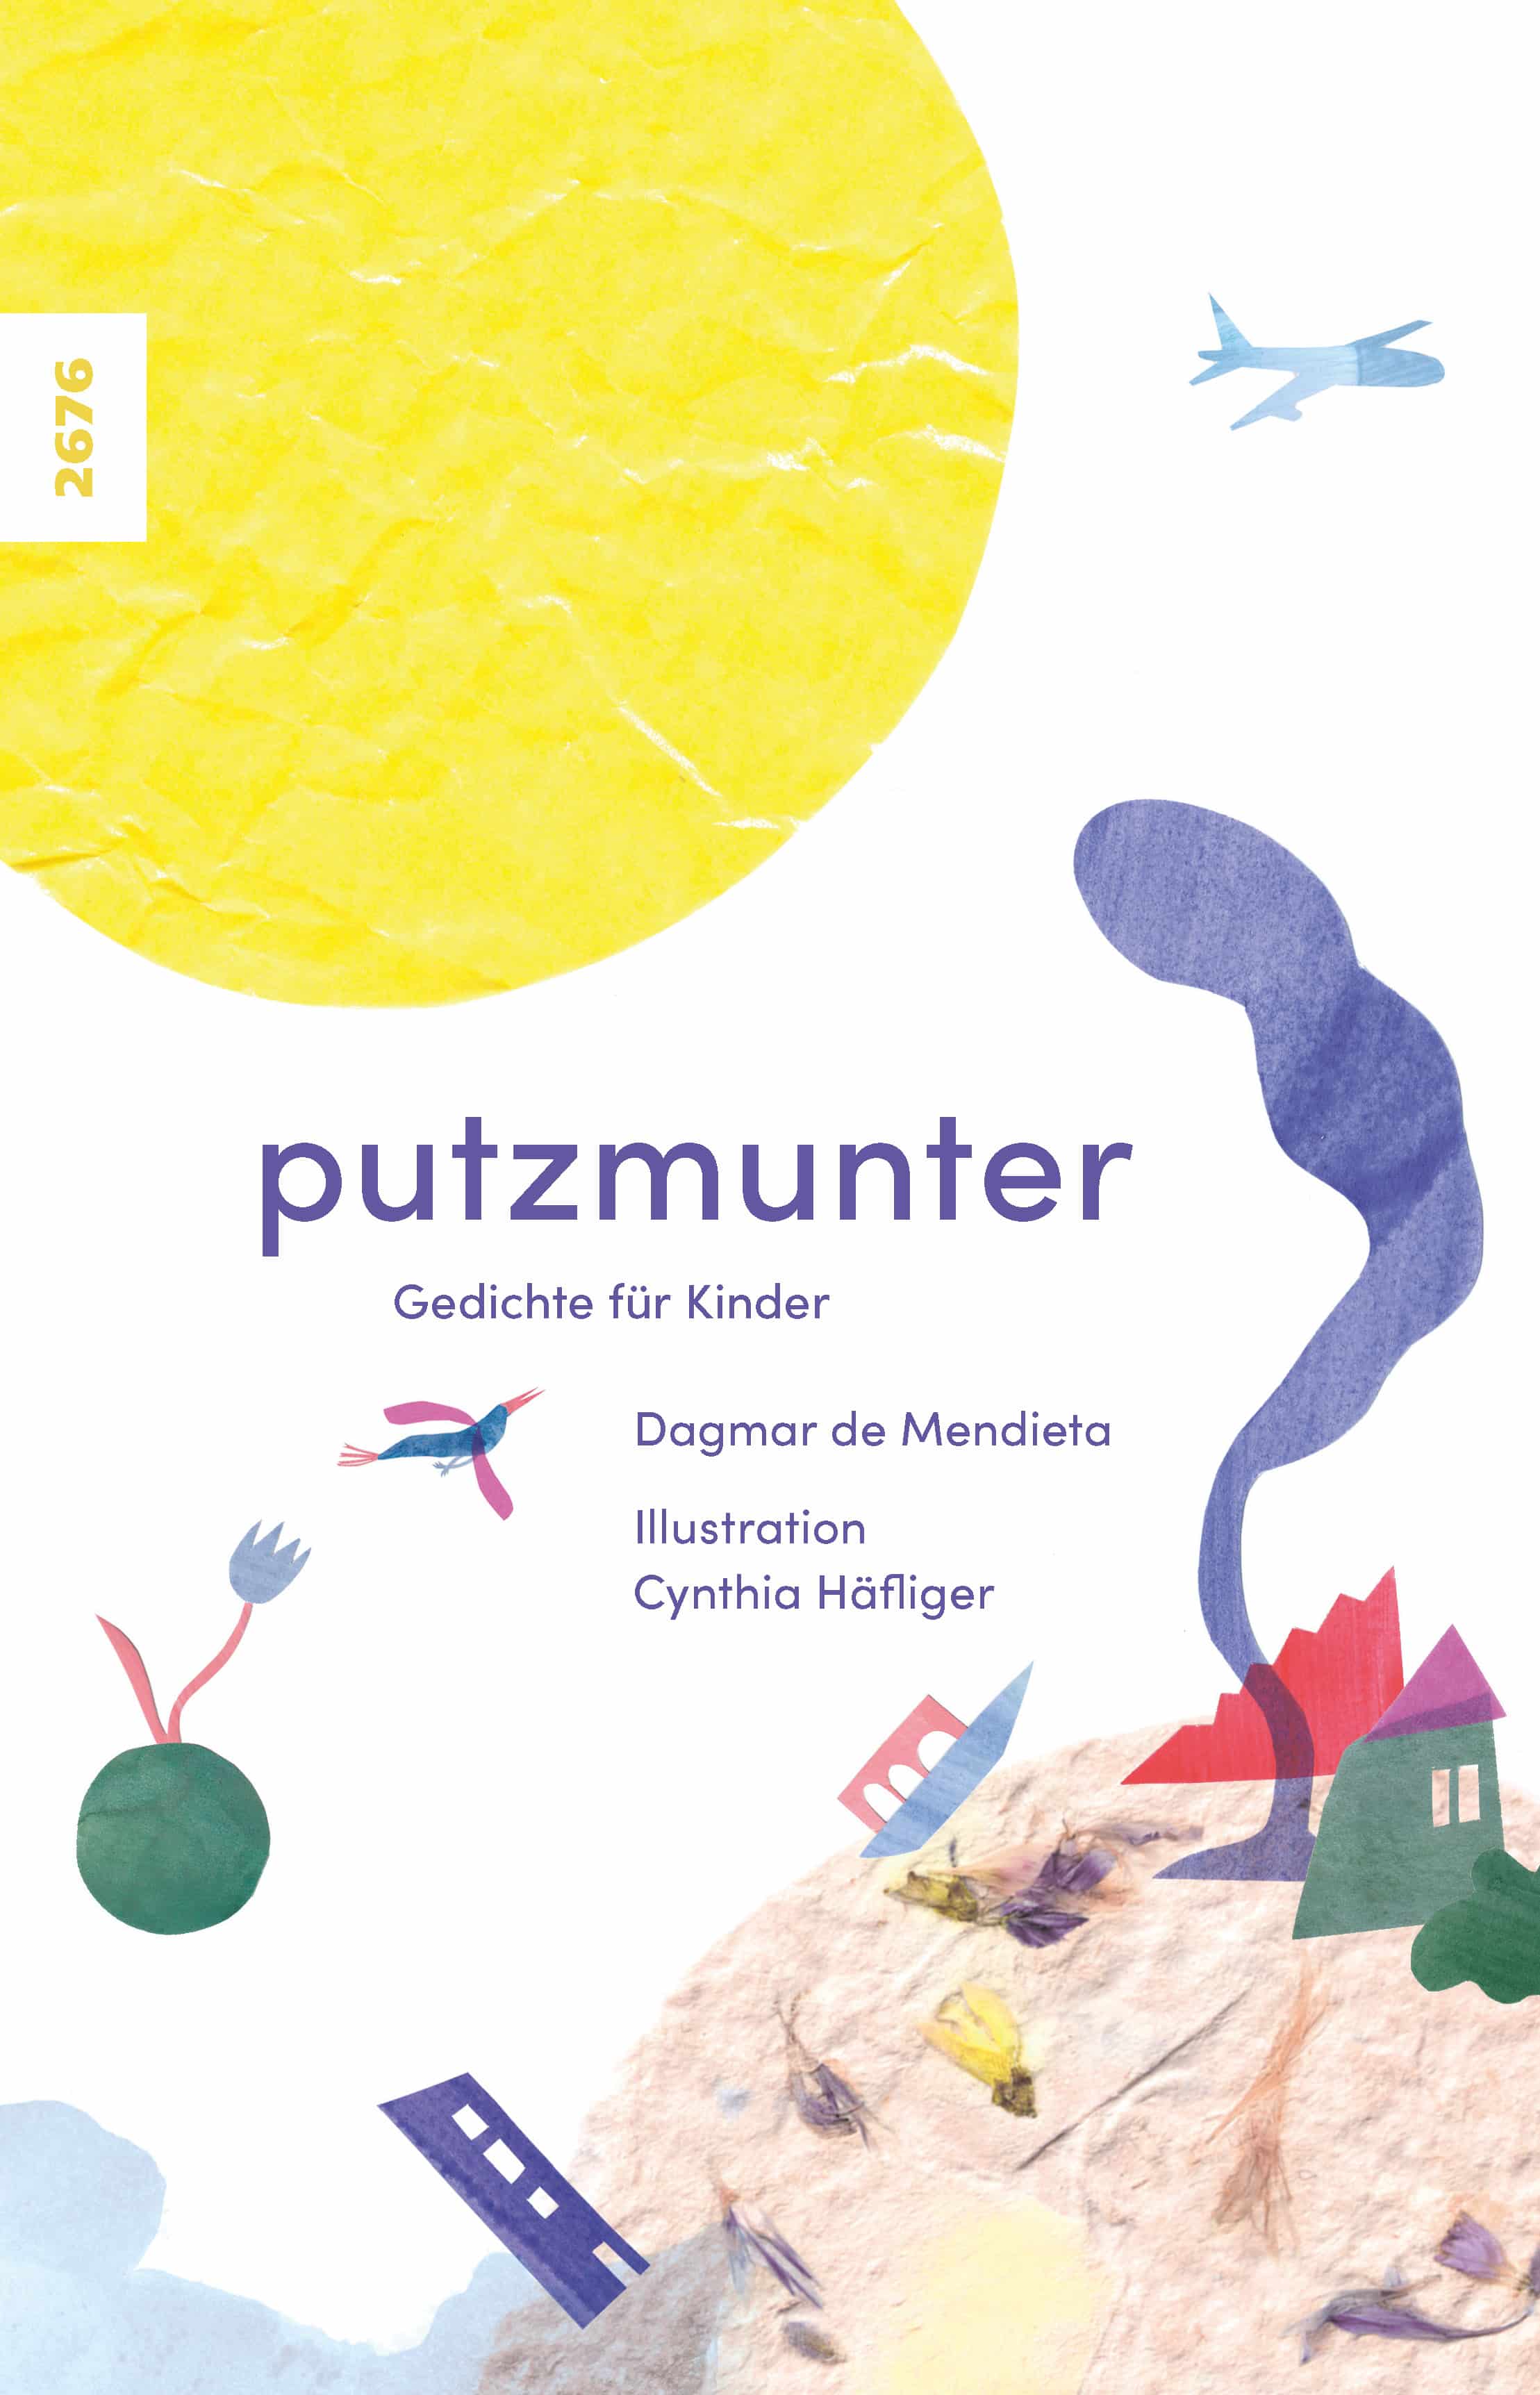 Putzmunter - Gedichte fuer Kinder, ein Kinderbuch von Dagmar de Mendieta, Illustration Cynthia Haefliger, SJW Verlag, Lyrik